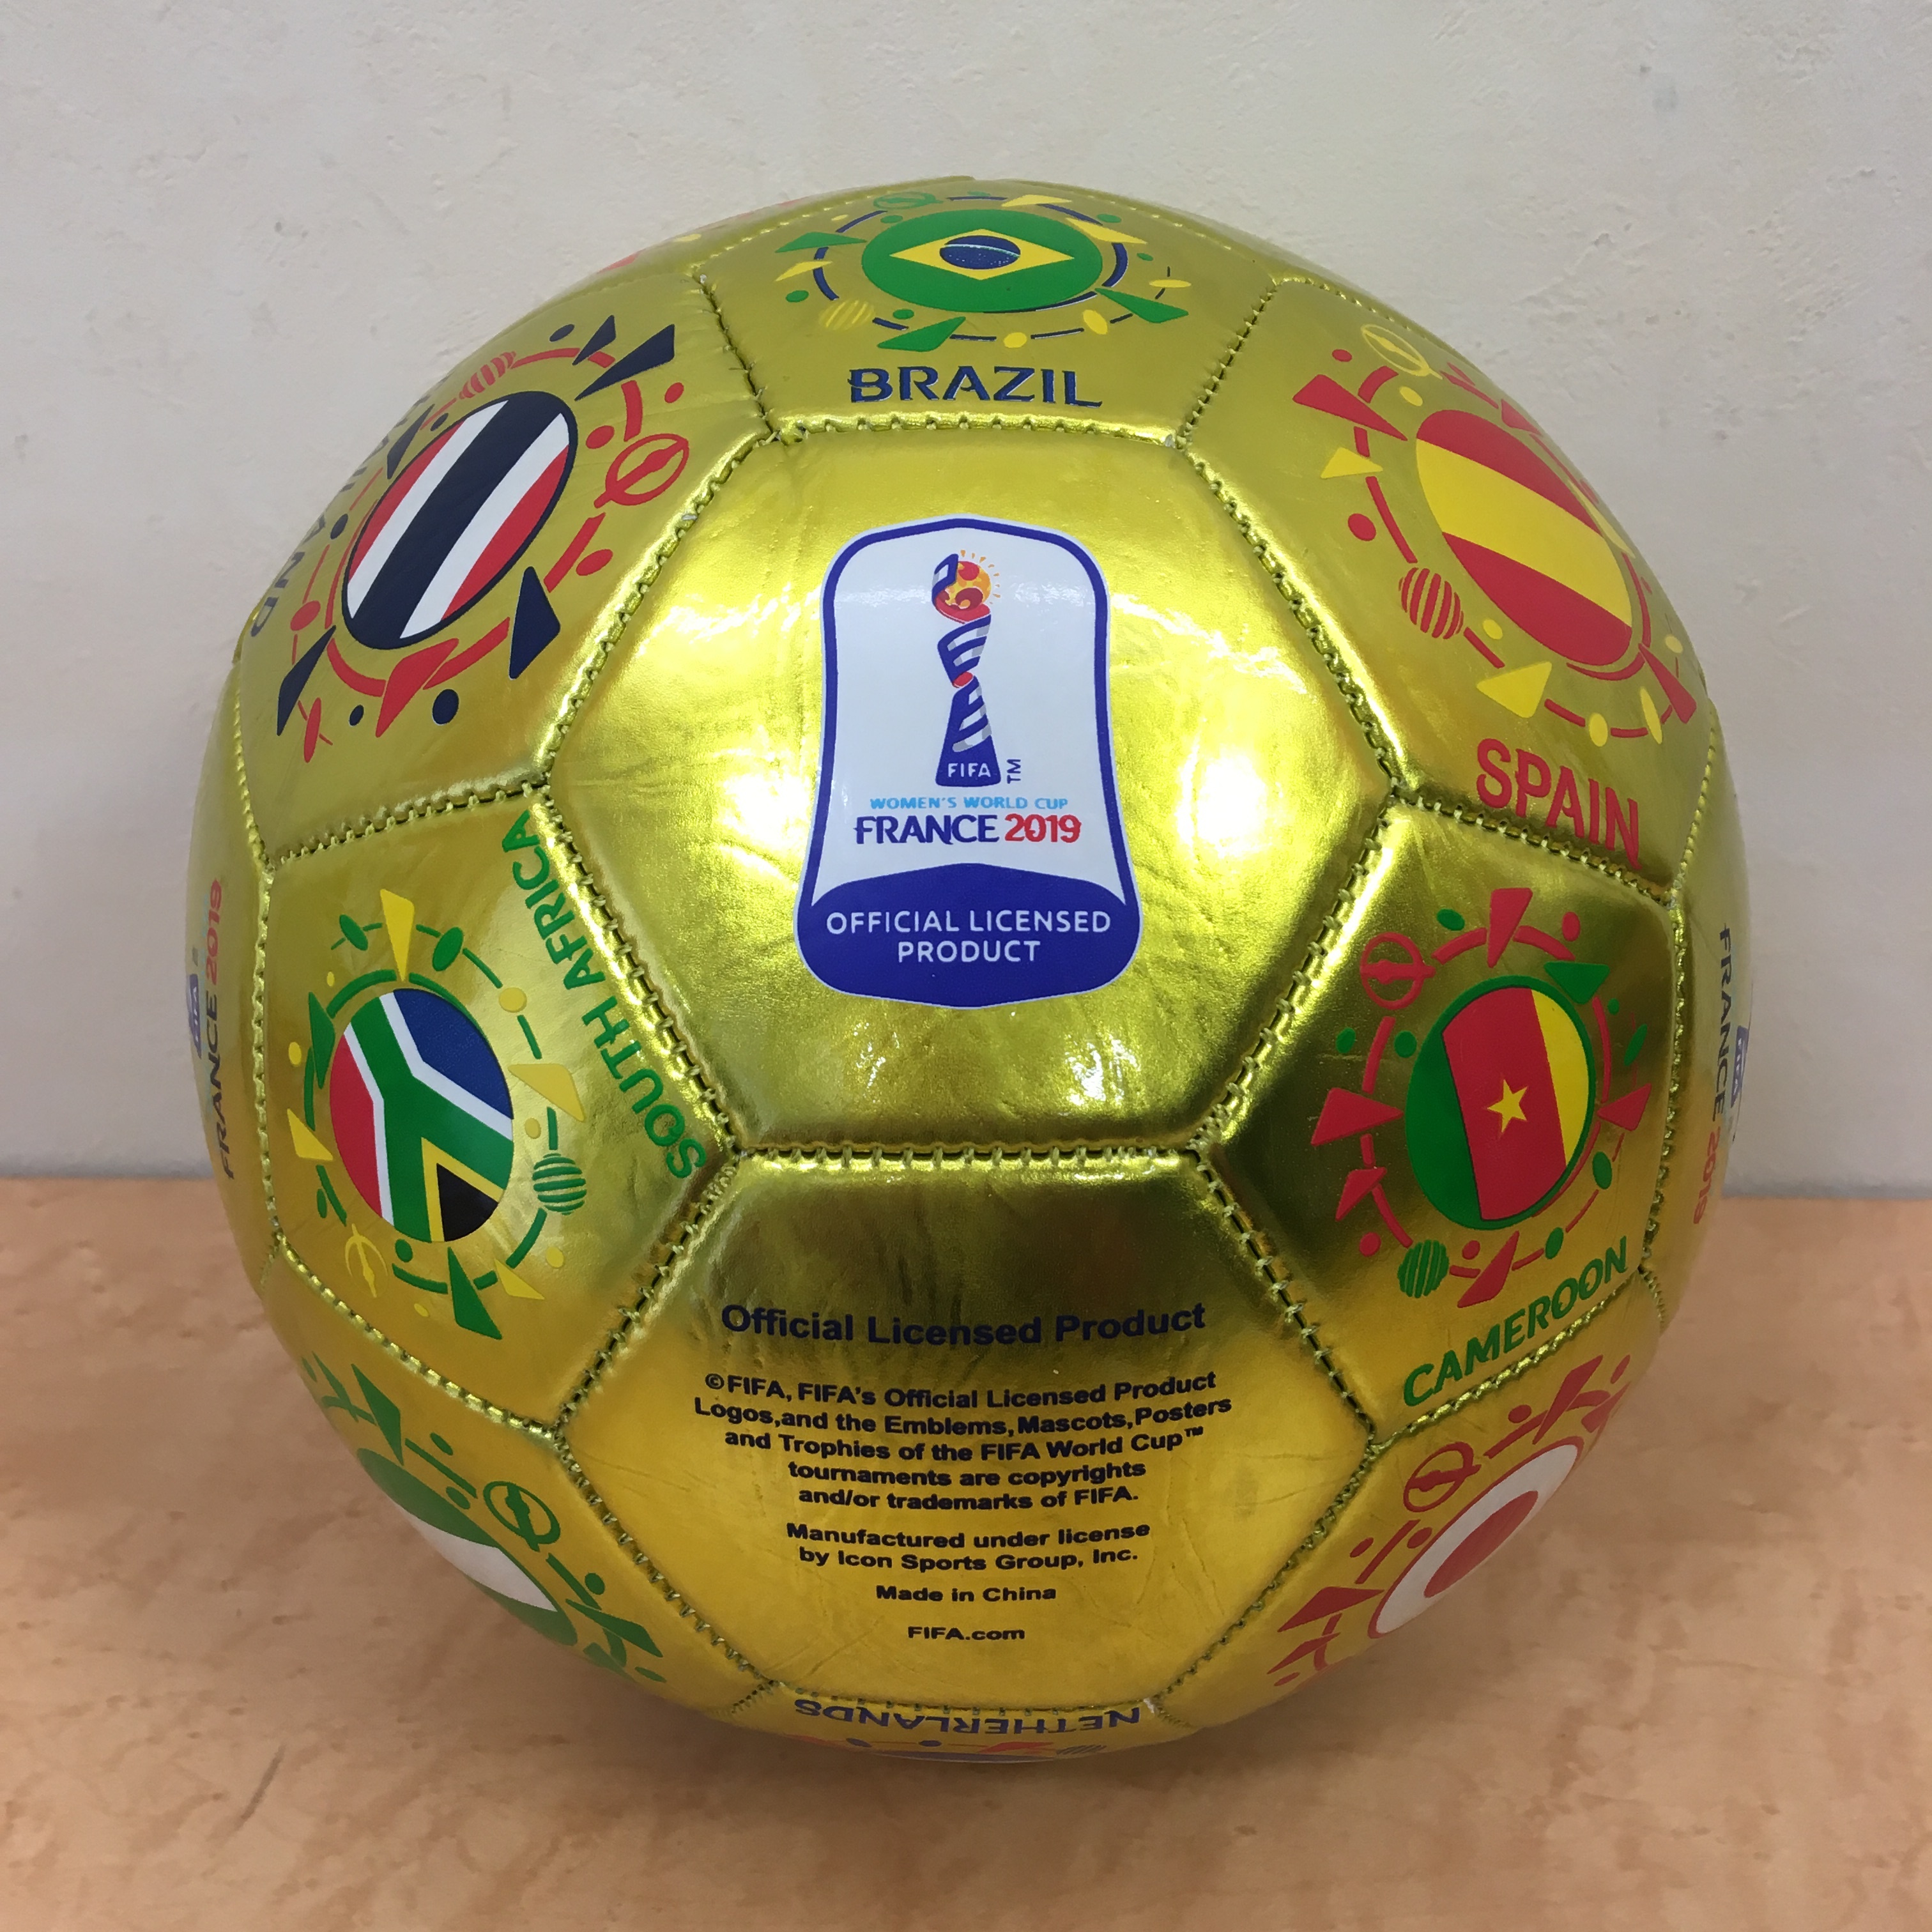 Fifa 女子ワールドカップ フランス 19 公式記念サッカーボール なでしこジャパン Freak スポーツウェア通販 海外ブランド 日本国内未入荷 海外直輸入